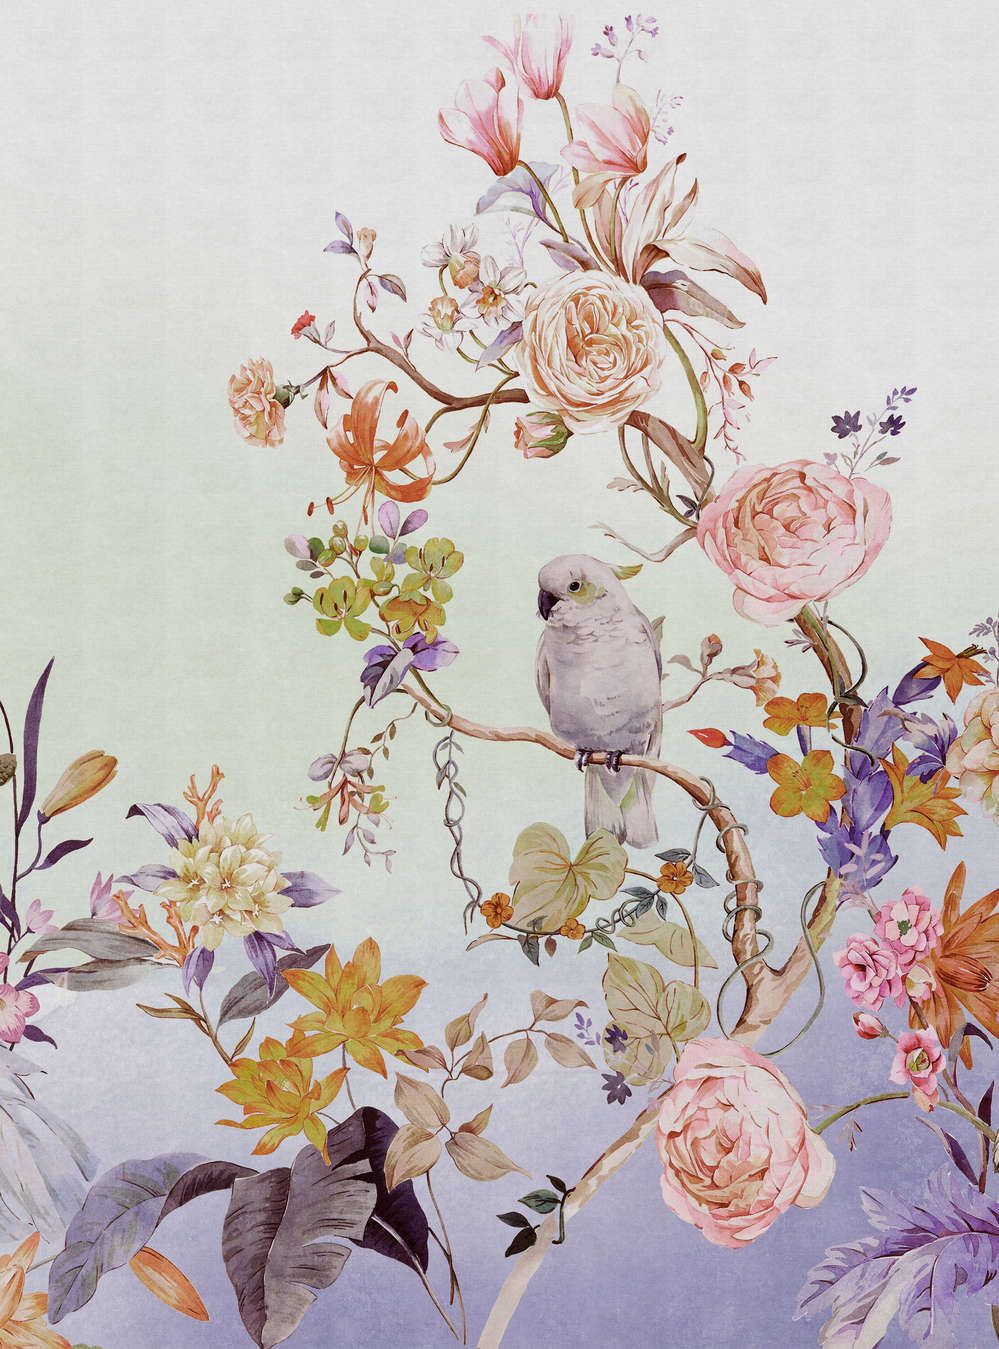             Fototapete »paradise« - Vogel & Blumen mit Farbverlauf und Leinenstruktur im Hintergrund – Bunt | Glattes, leicht glänzendes Premiumvlies
        